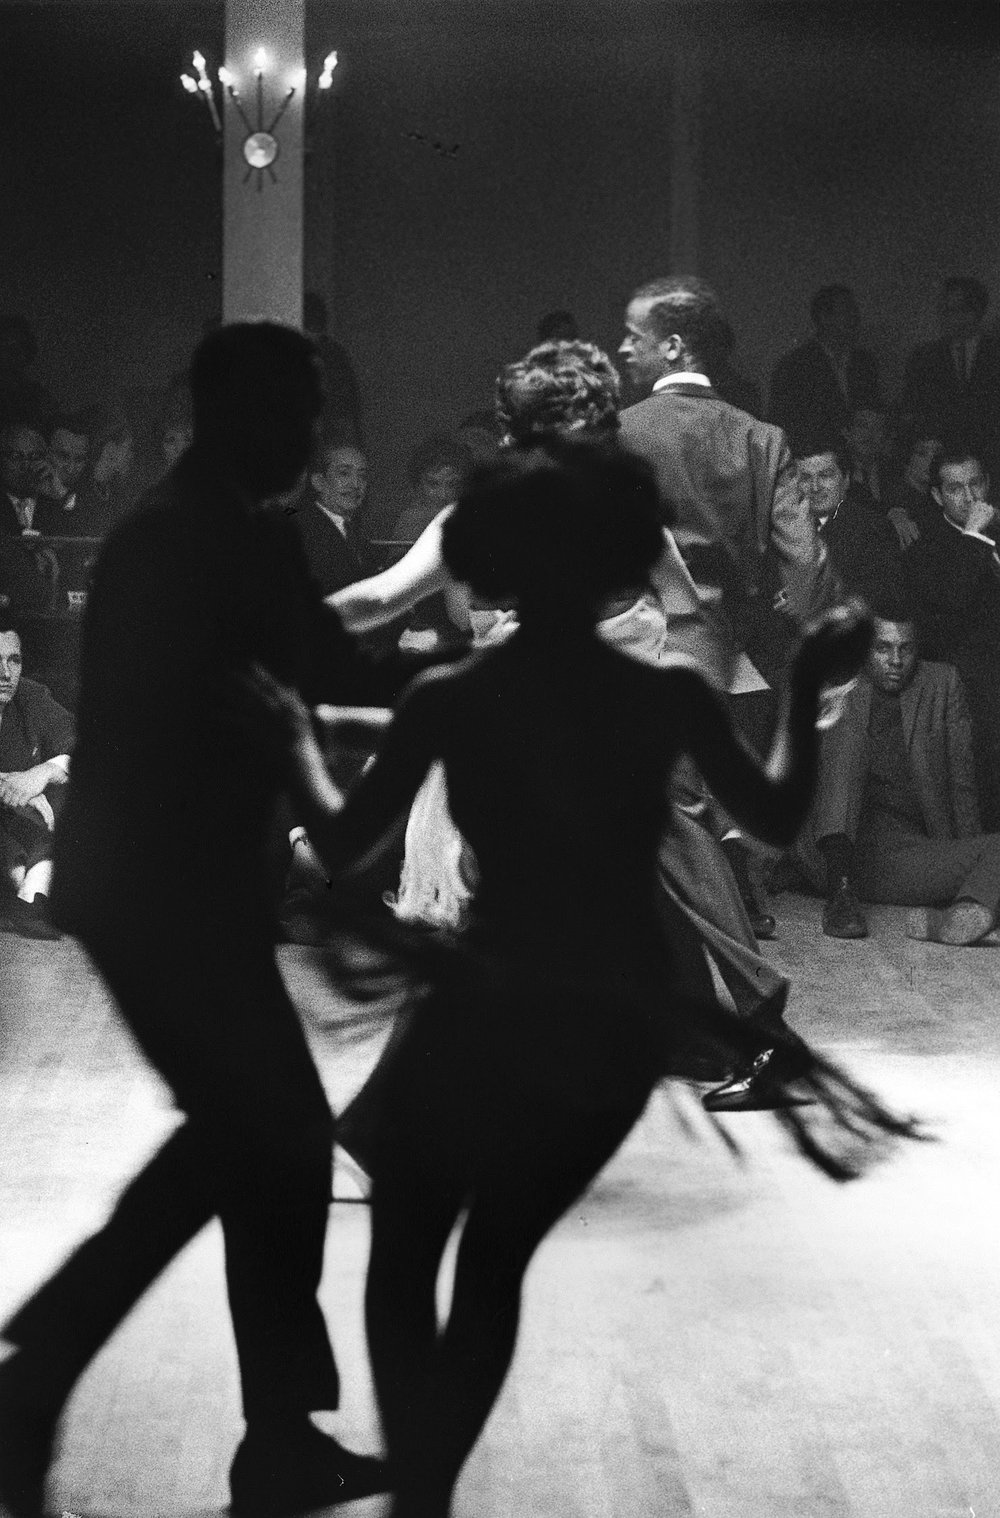 Mambo at the Palladium, 1959.